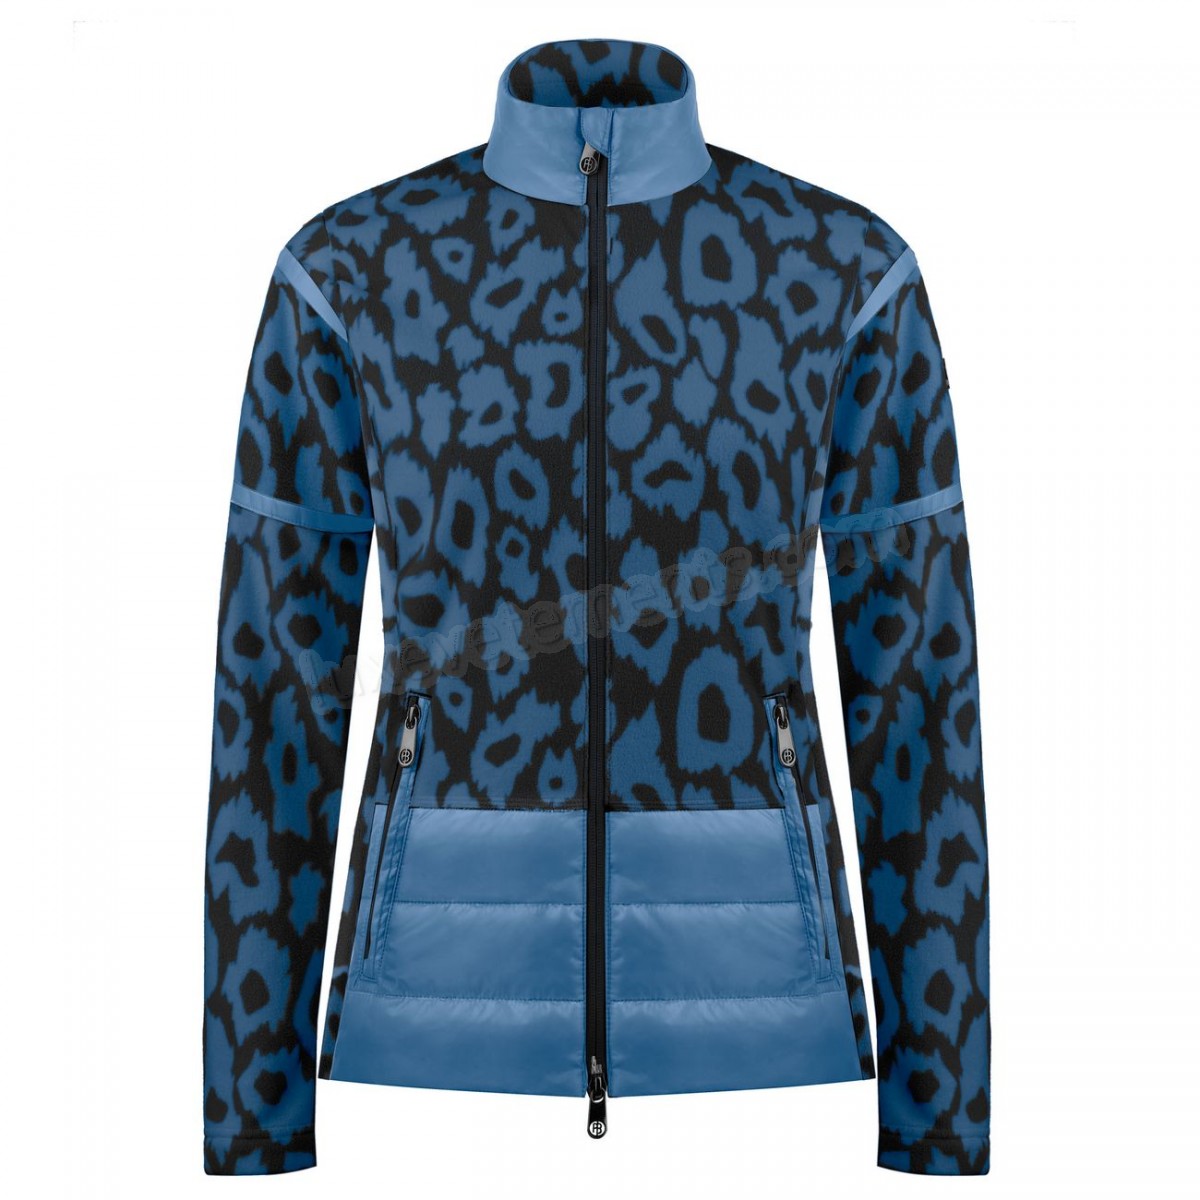 Poivre Blanc-Sports d'hiver femme POIVRE BLANC Veste Polaire Poivre Blanc Hybrid Fleece Jacket 1601 Panther Blue Femme Vente en ligne - -0